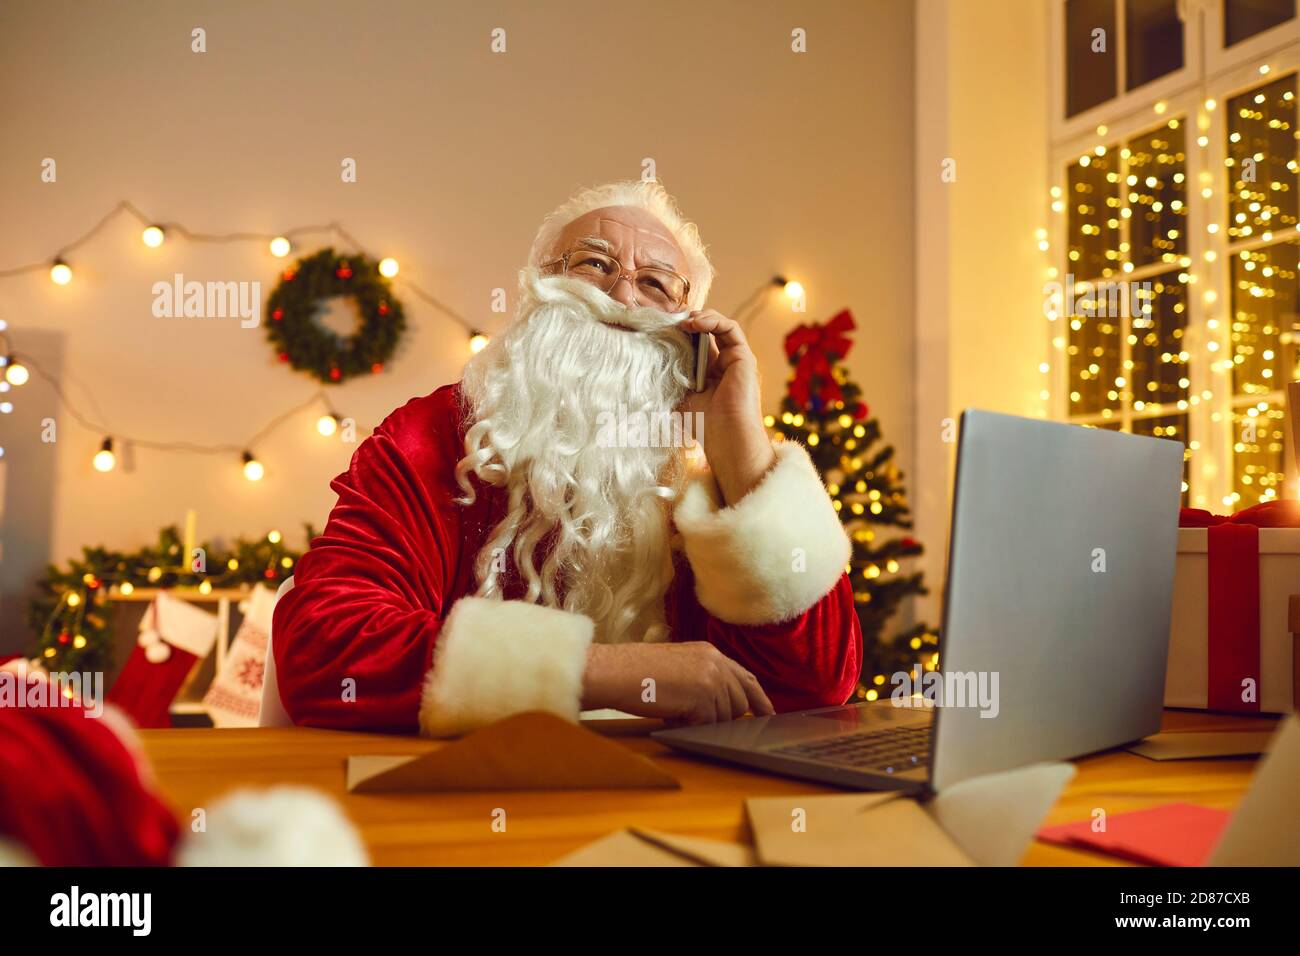 Der Weihnachtsmann arbeitet am Laptop, während er im Zimmer, das für Weihnachten dekoriert ist, telefoniert. Stockfoto